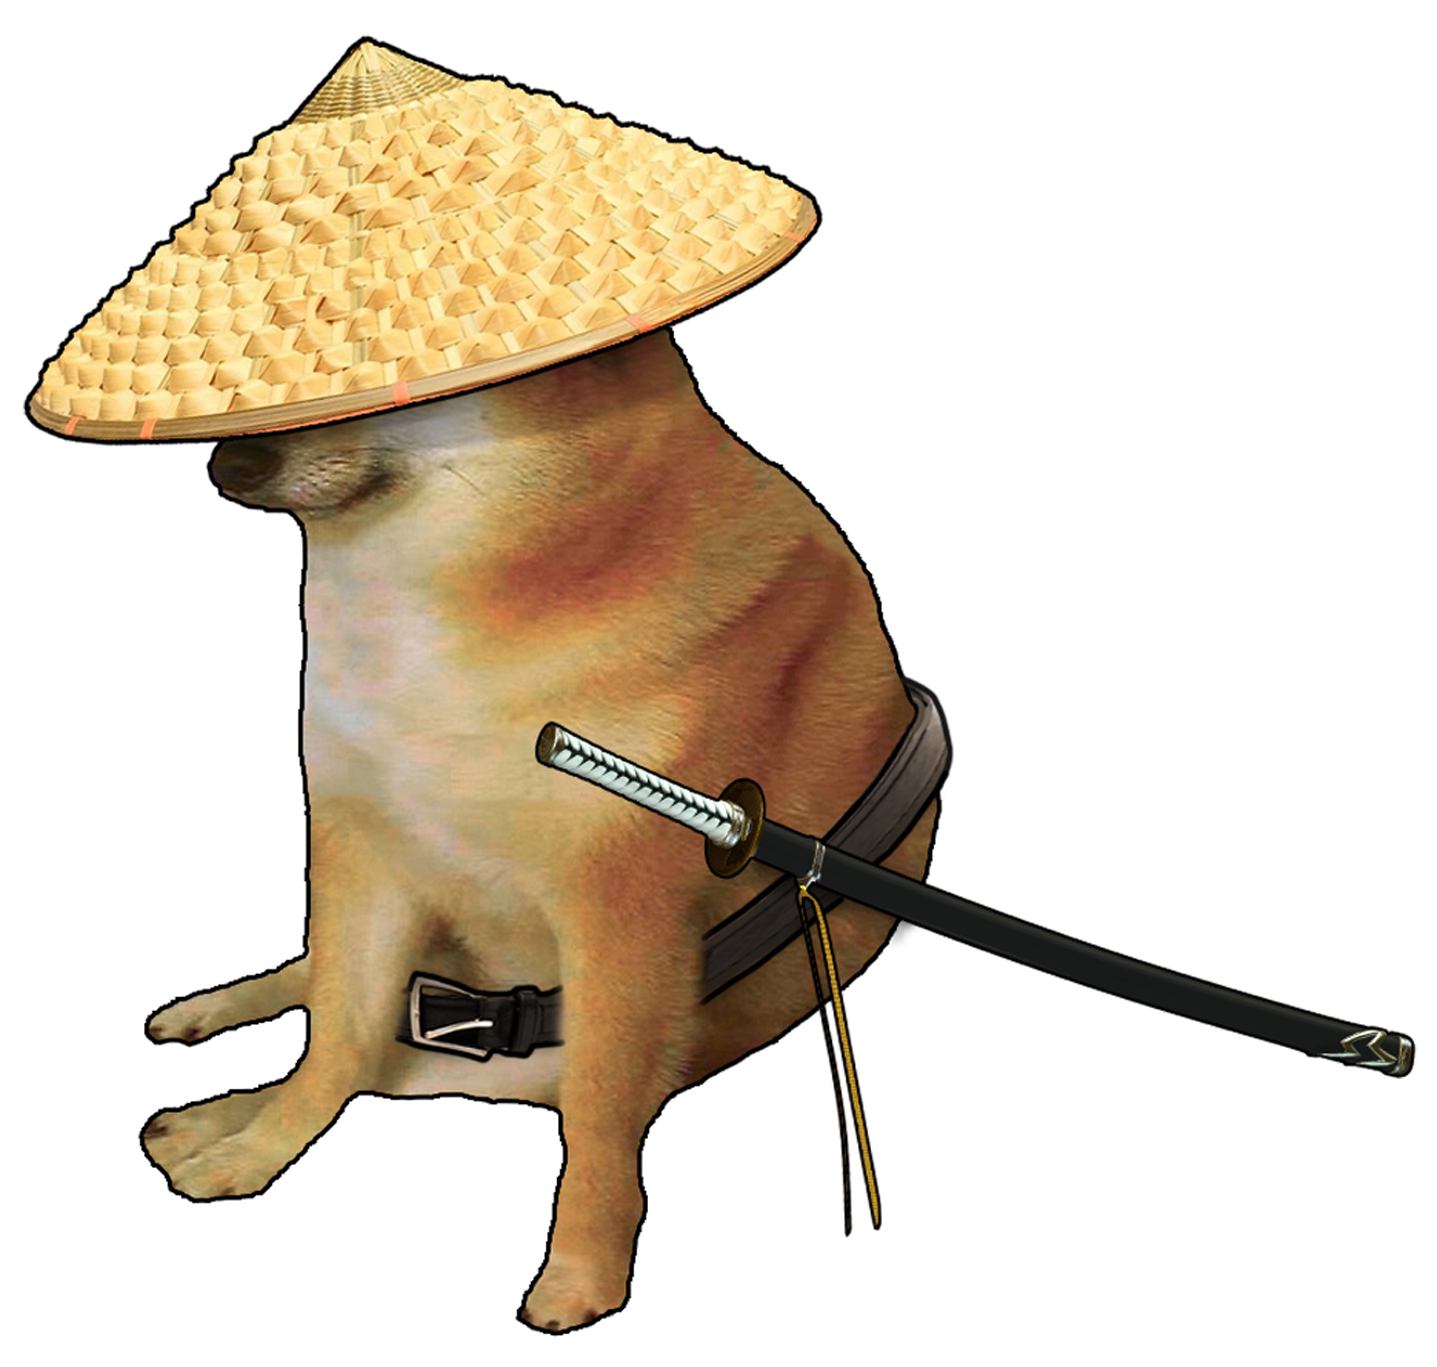 Samurai Cheems. R Dogelore. Ironic Doge Memes In 2021. Doge Meme, Spongebob Funny, Dog Memes